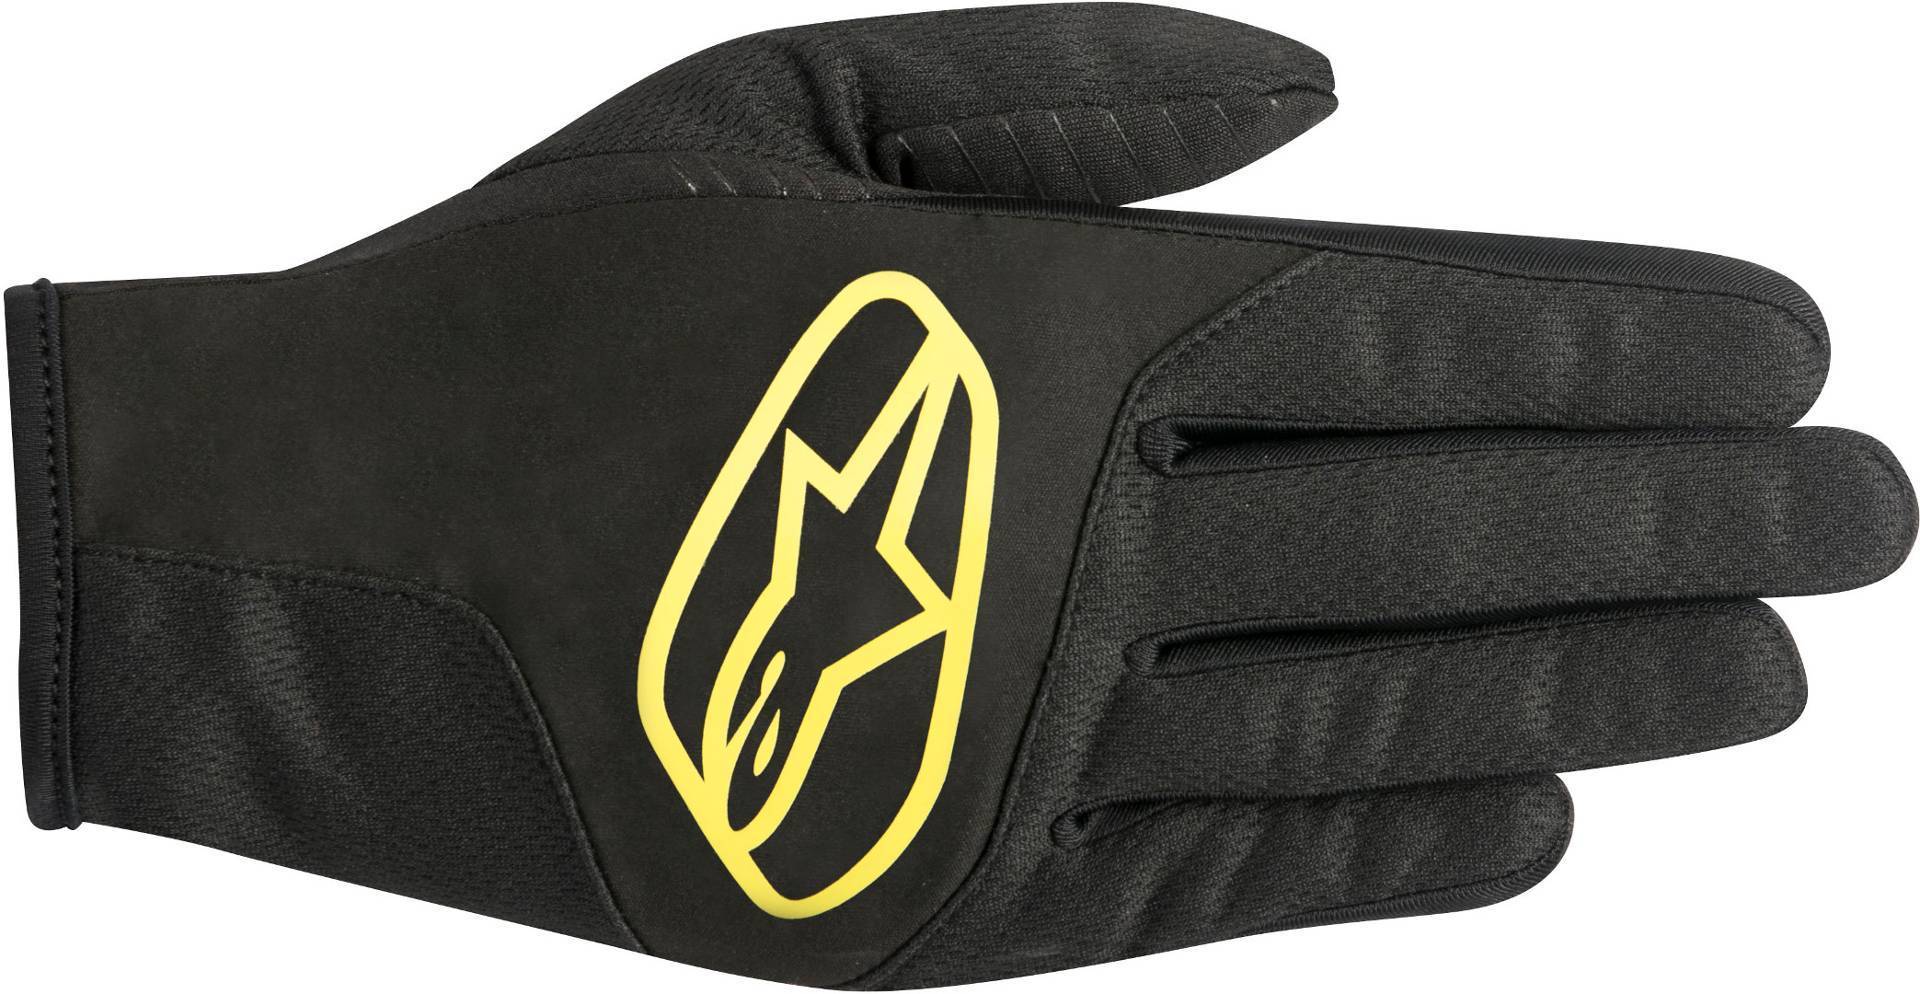 Alpinestars Cirrus Handschuhe, schwarz-gelb, Größe 2XL, schwarz-gelb, Größe 2XL